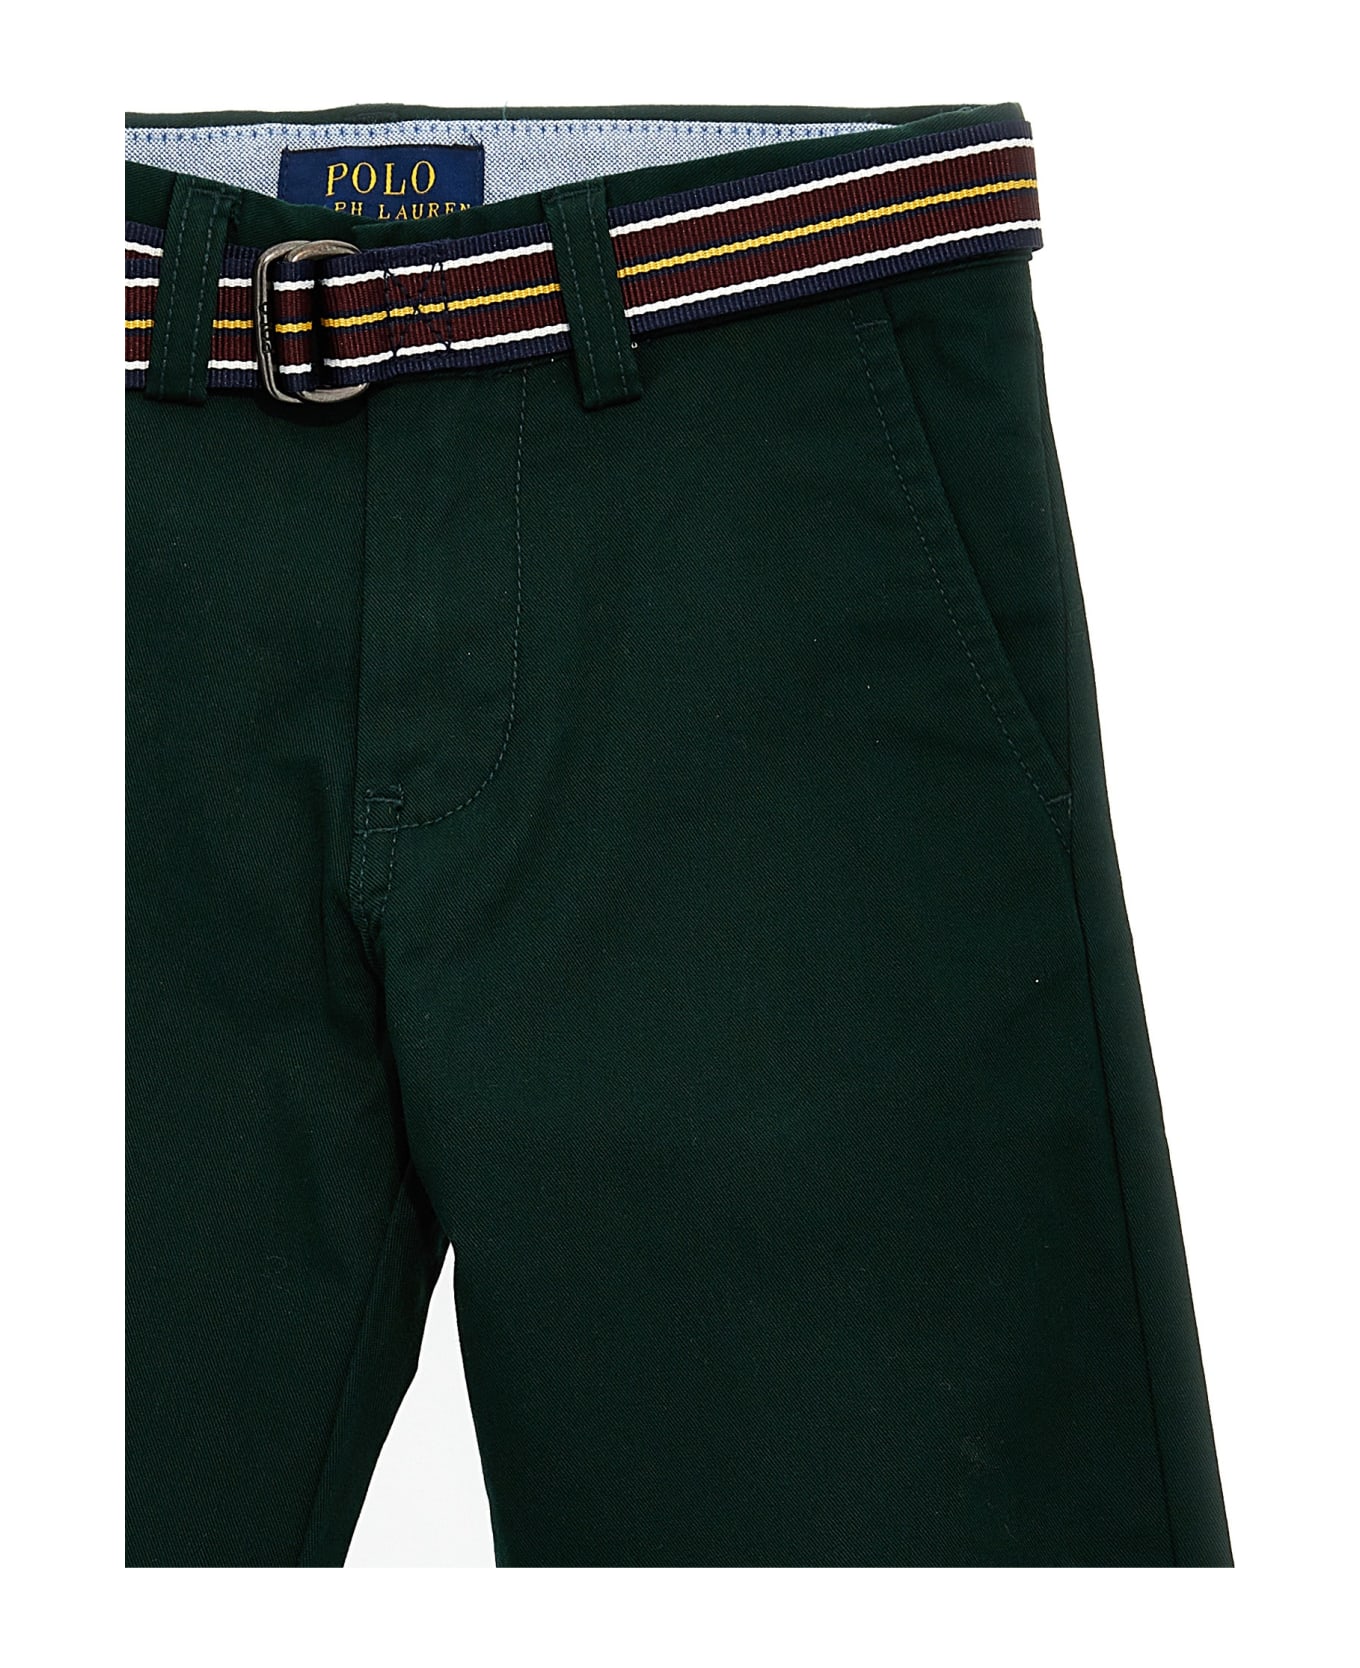 Polo Ralph Lauren Belt Chinos - Green